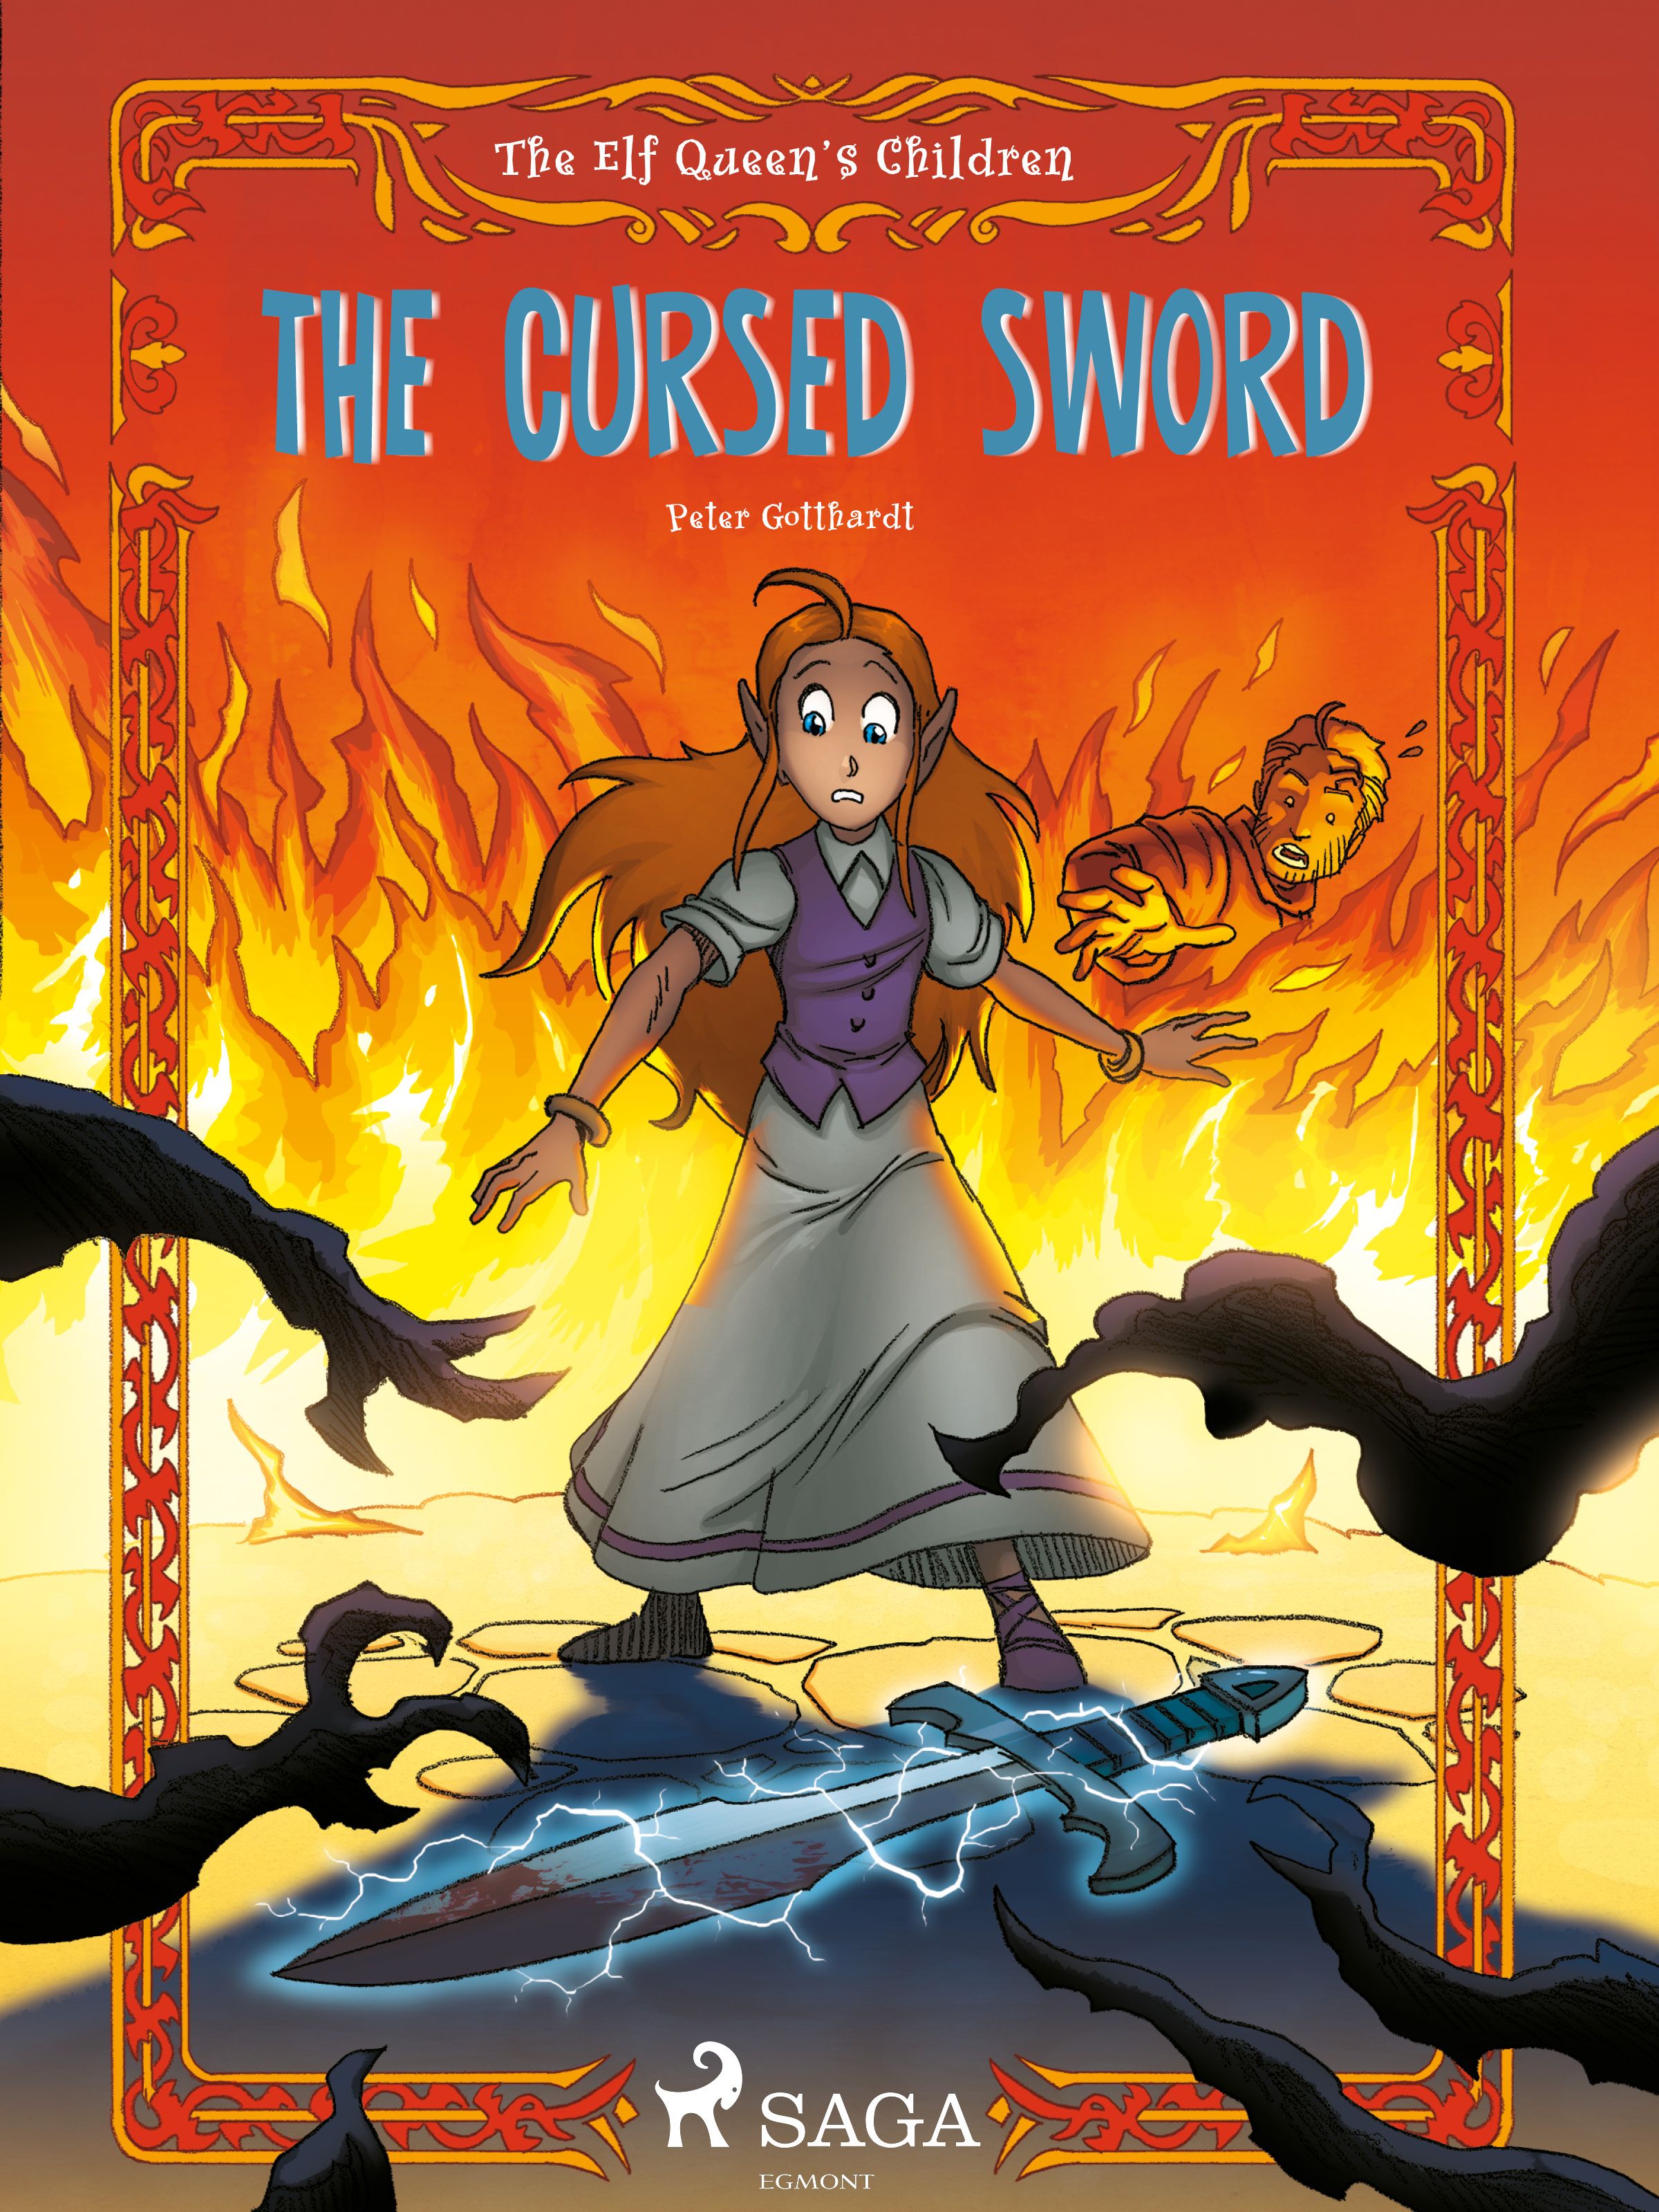 The Elf Queen's Children 4: The Cursed Sword, eBook by Peter Gotthardt